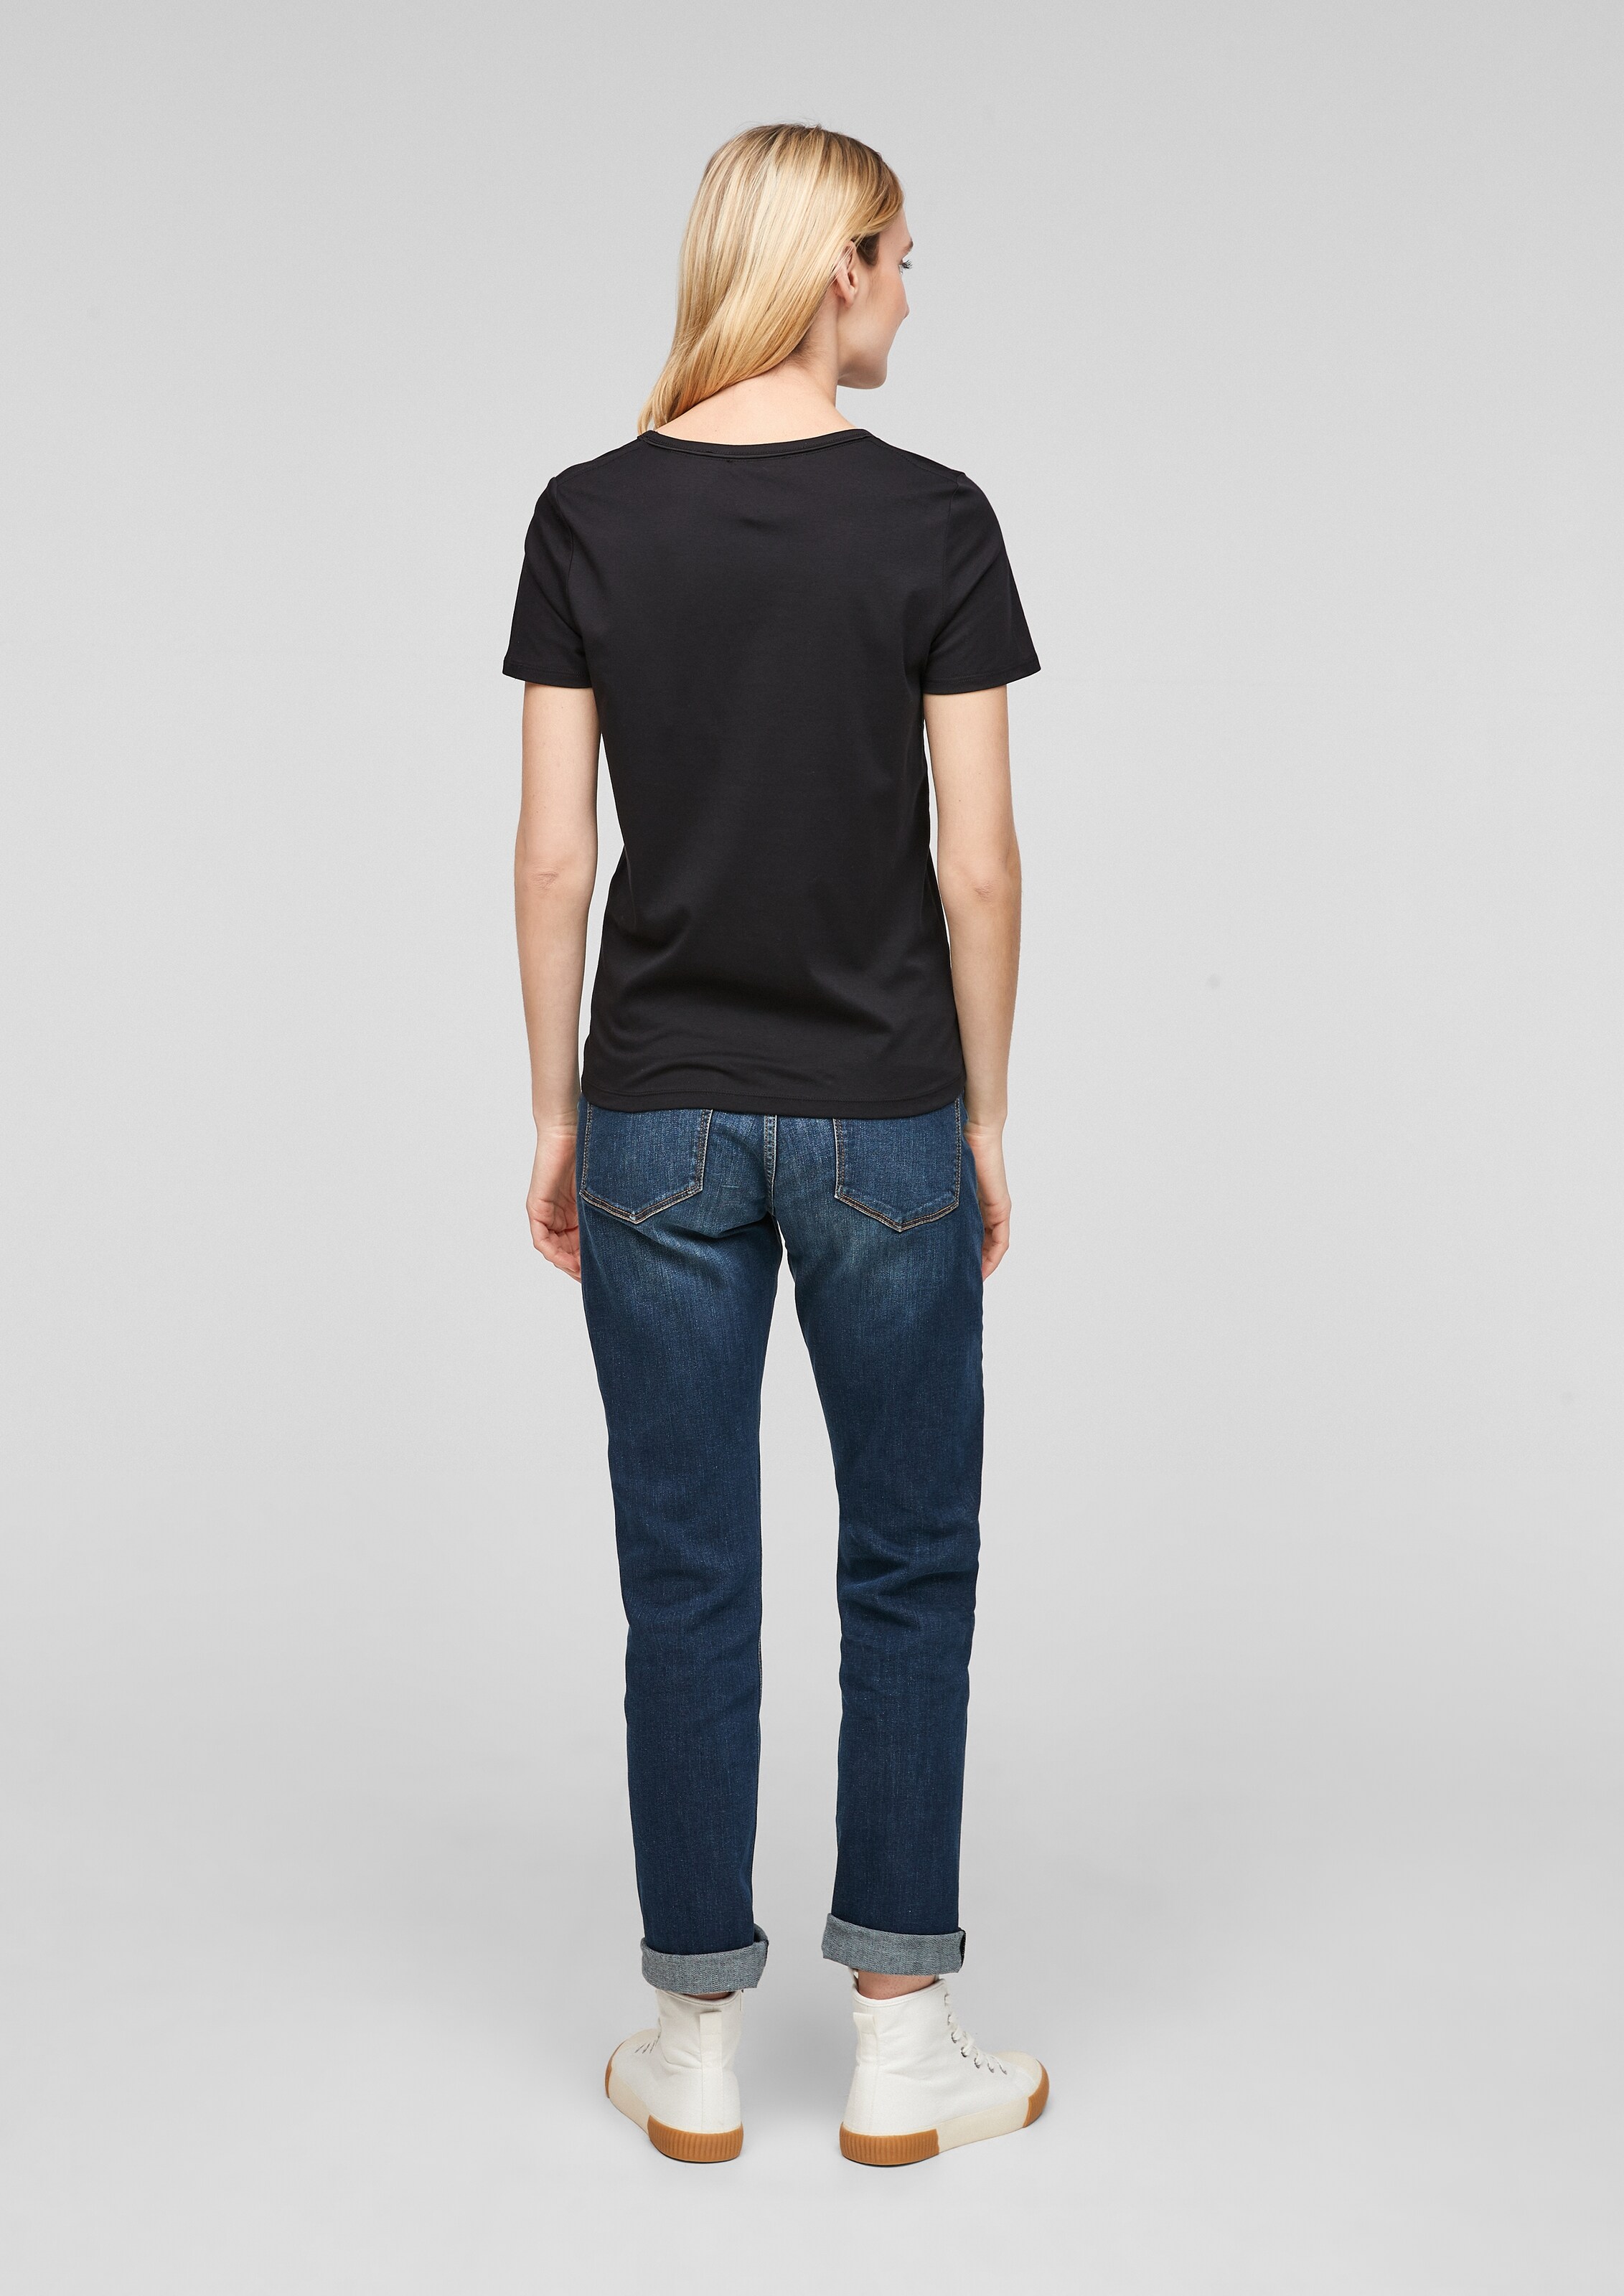 Frauen Shirts & Tops s.Oliver T-Shirt in Schwarz - YM90506